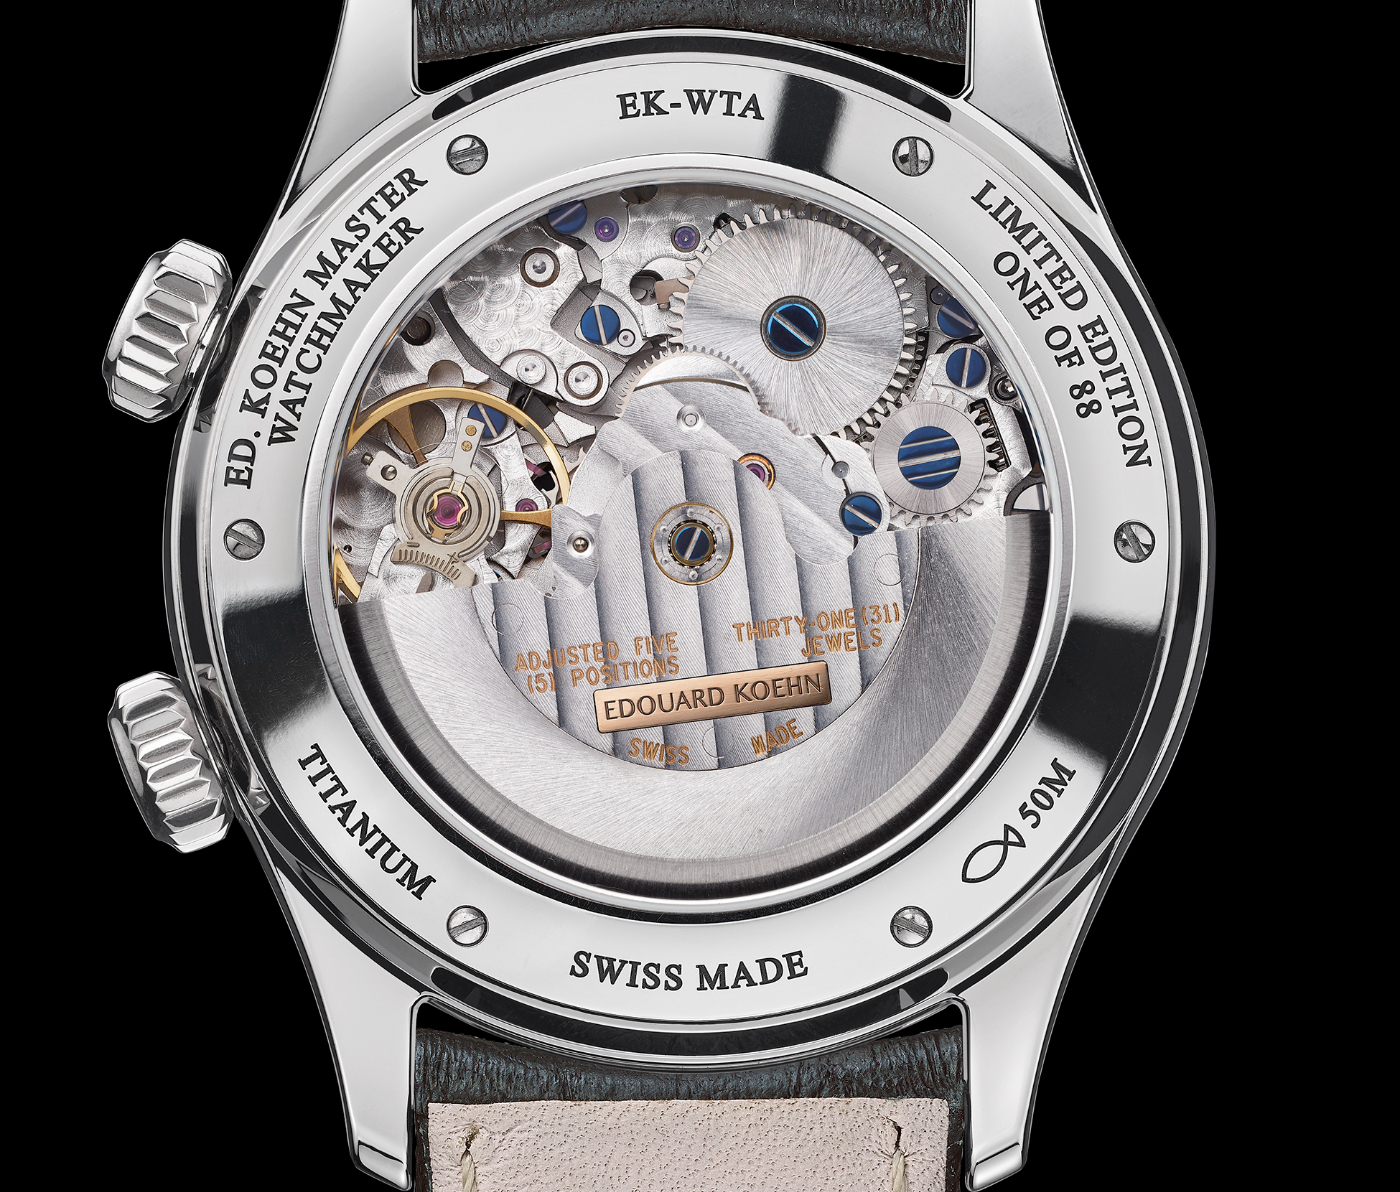 Presentando el reloj “World Heritage“ de Edouard Koehn